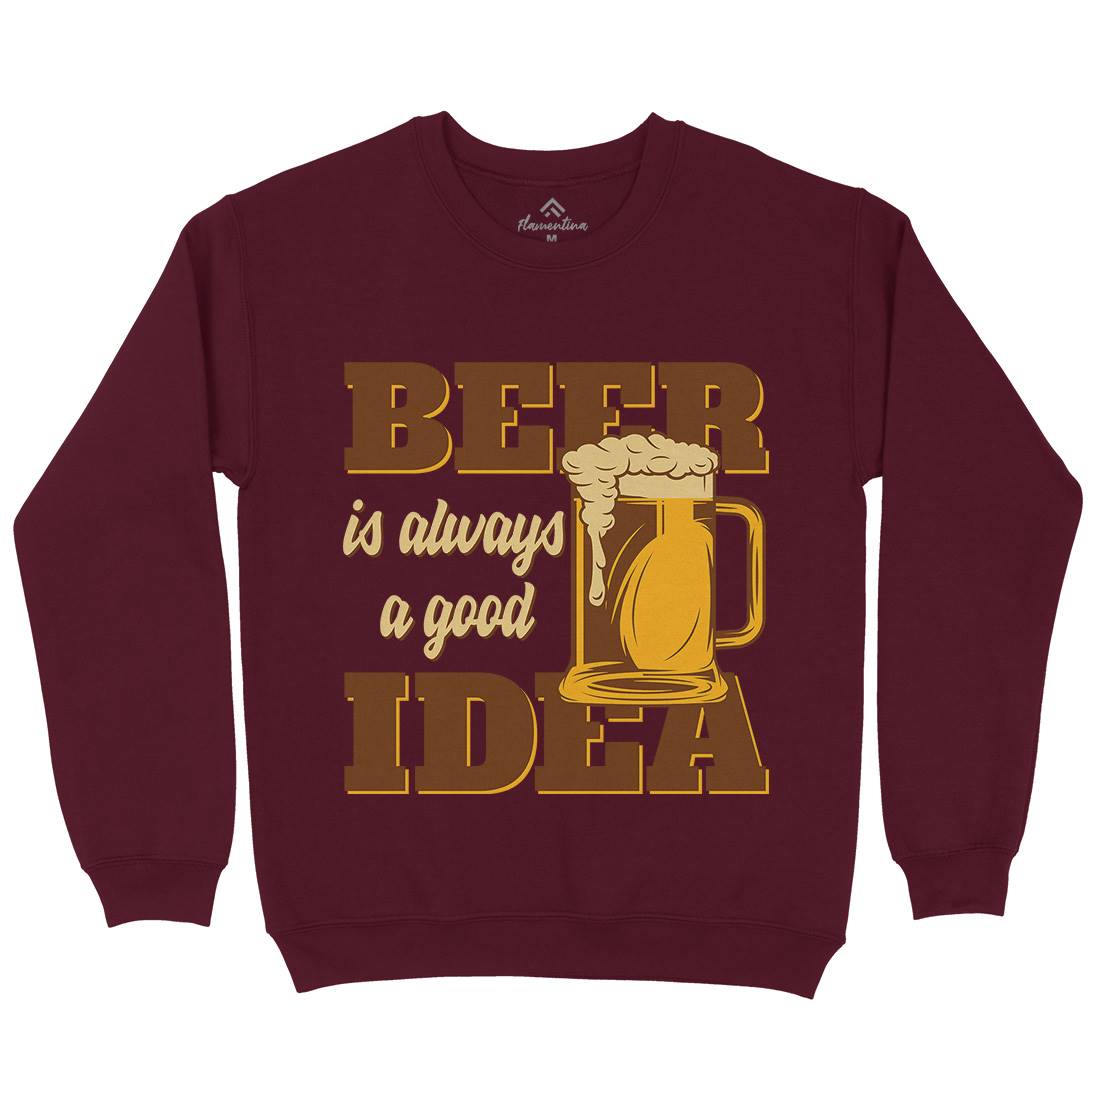 Beer Good Idea Kids Crew Neck Sweatshirt Drinks B288